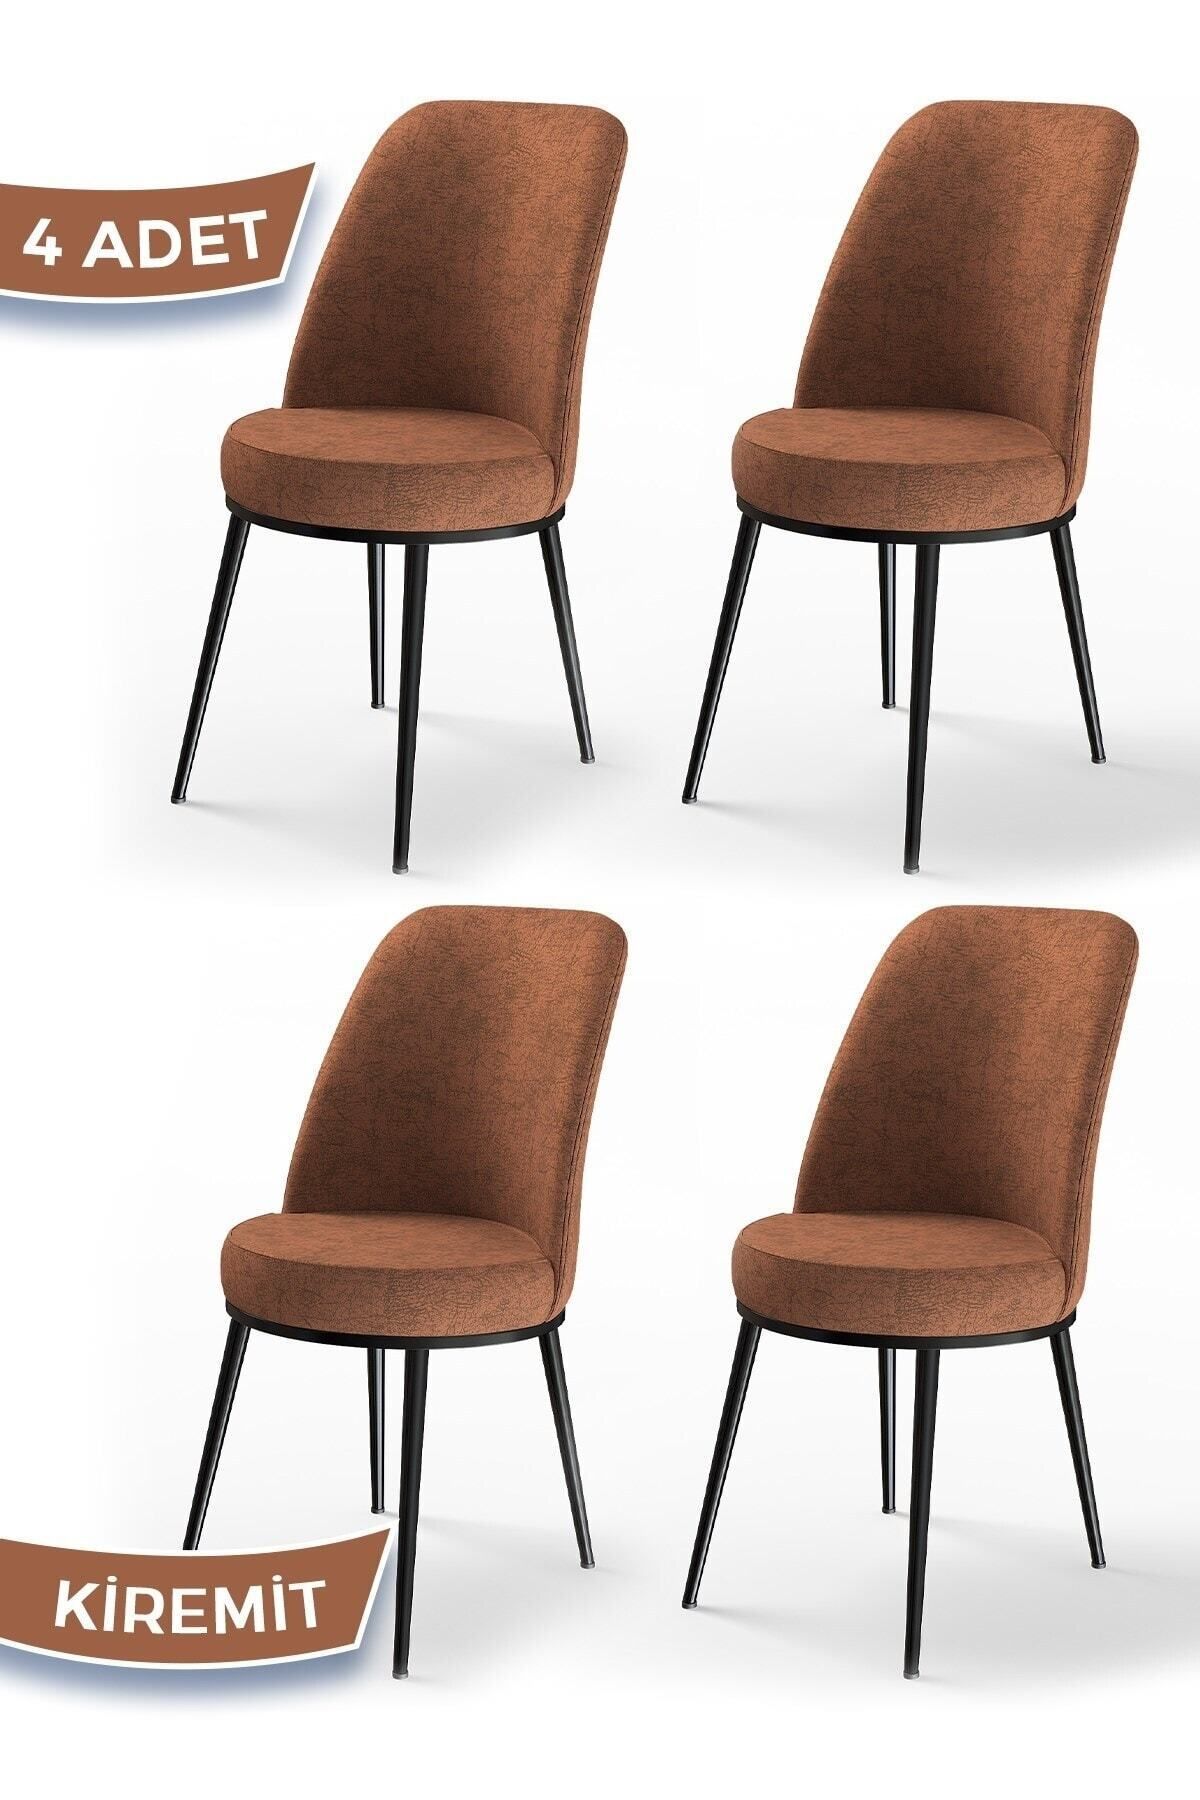 Canisa Concept Dexa Serisi, Üst Kalite Yemek Odası Sandalyesi, Metal Siyah Iskeletli, 4 Adet Kiremit Sandalye